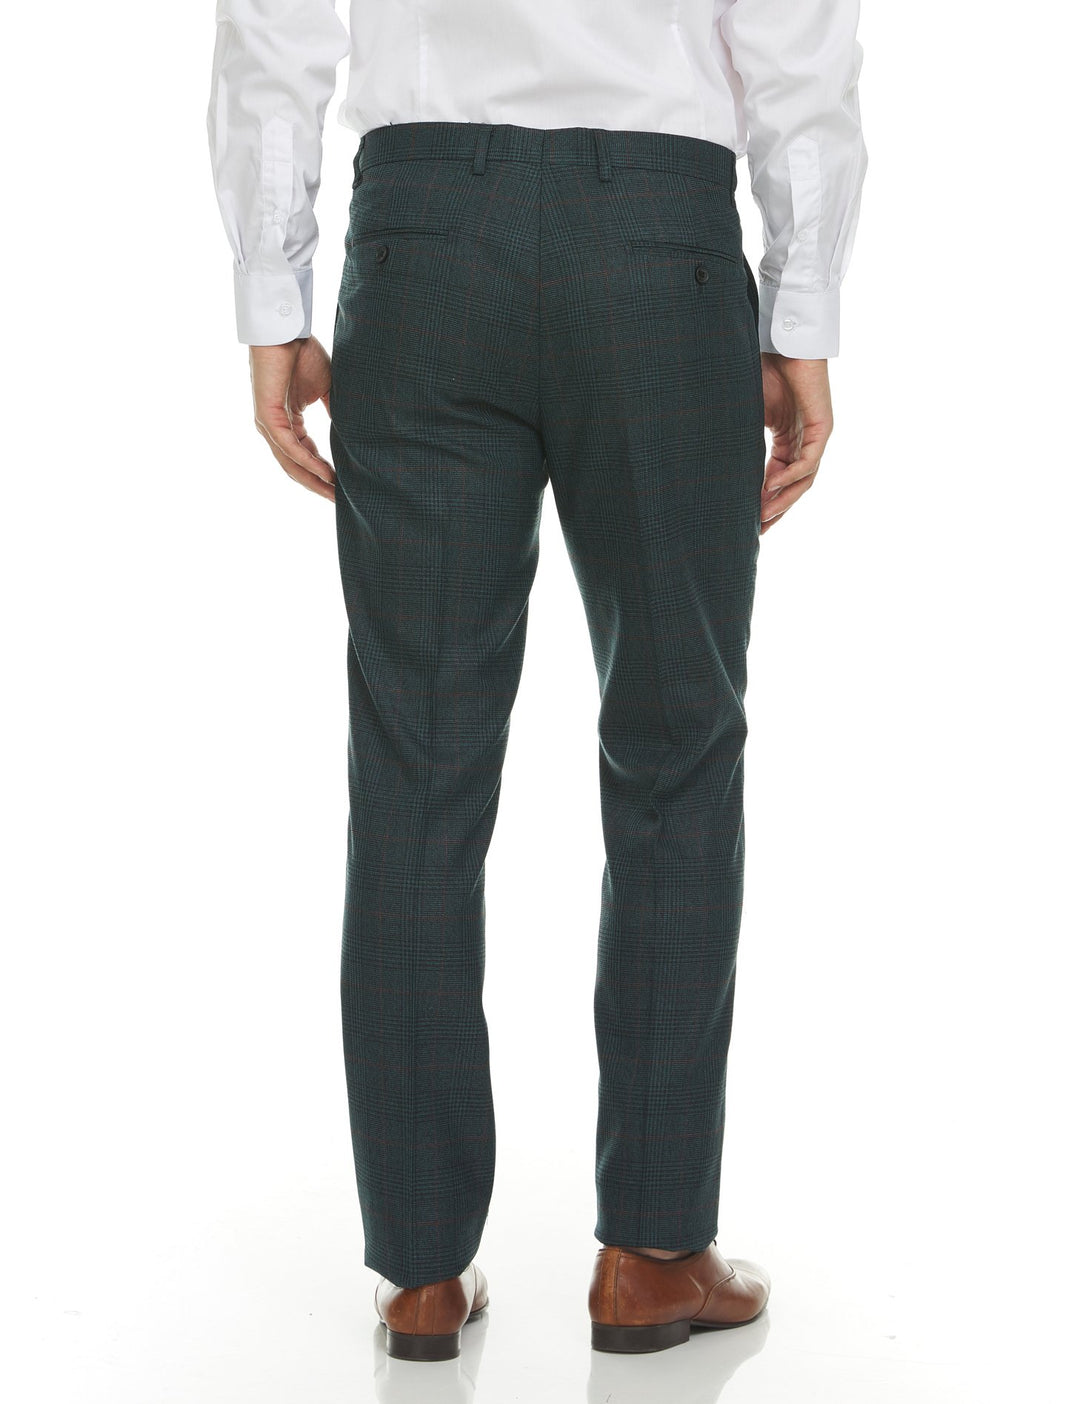 Adam Baker Men's Slim Fit Double Breasted 2-Piece (Jacket & Pants) Suit Set